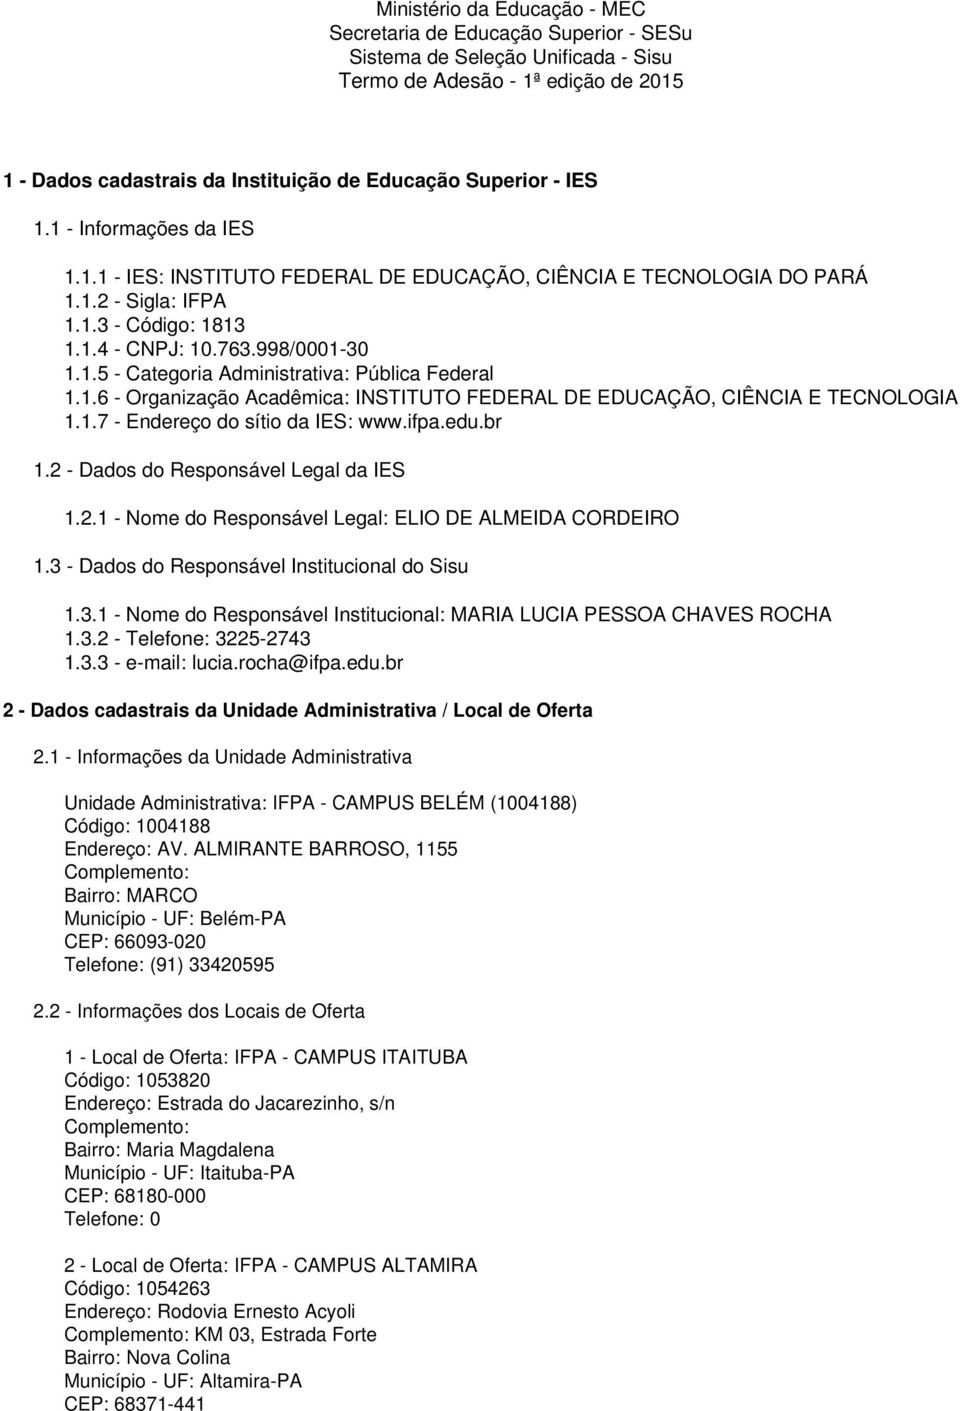 1.6 - Organização Acadêmica: INSTITUTO FEDERAL DE EDUCAÇÃO, CIÊNCIA E TECNOLOGIA 1.1.7 - Endereço do sítio da IES: www.ifpa.edu.br 1.2 - Dados do Responsável Legal da IES 1.2.1 - Nome do Responsável Legal: ELIO DE ALMEIDA CORDEIRO 1.